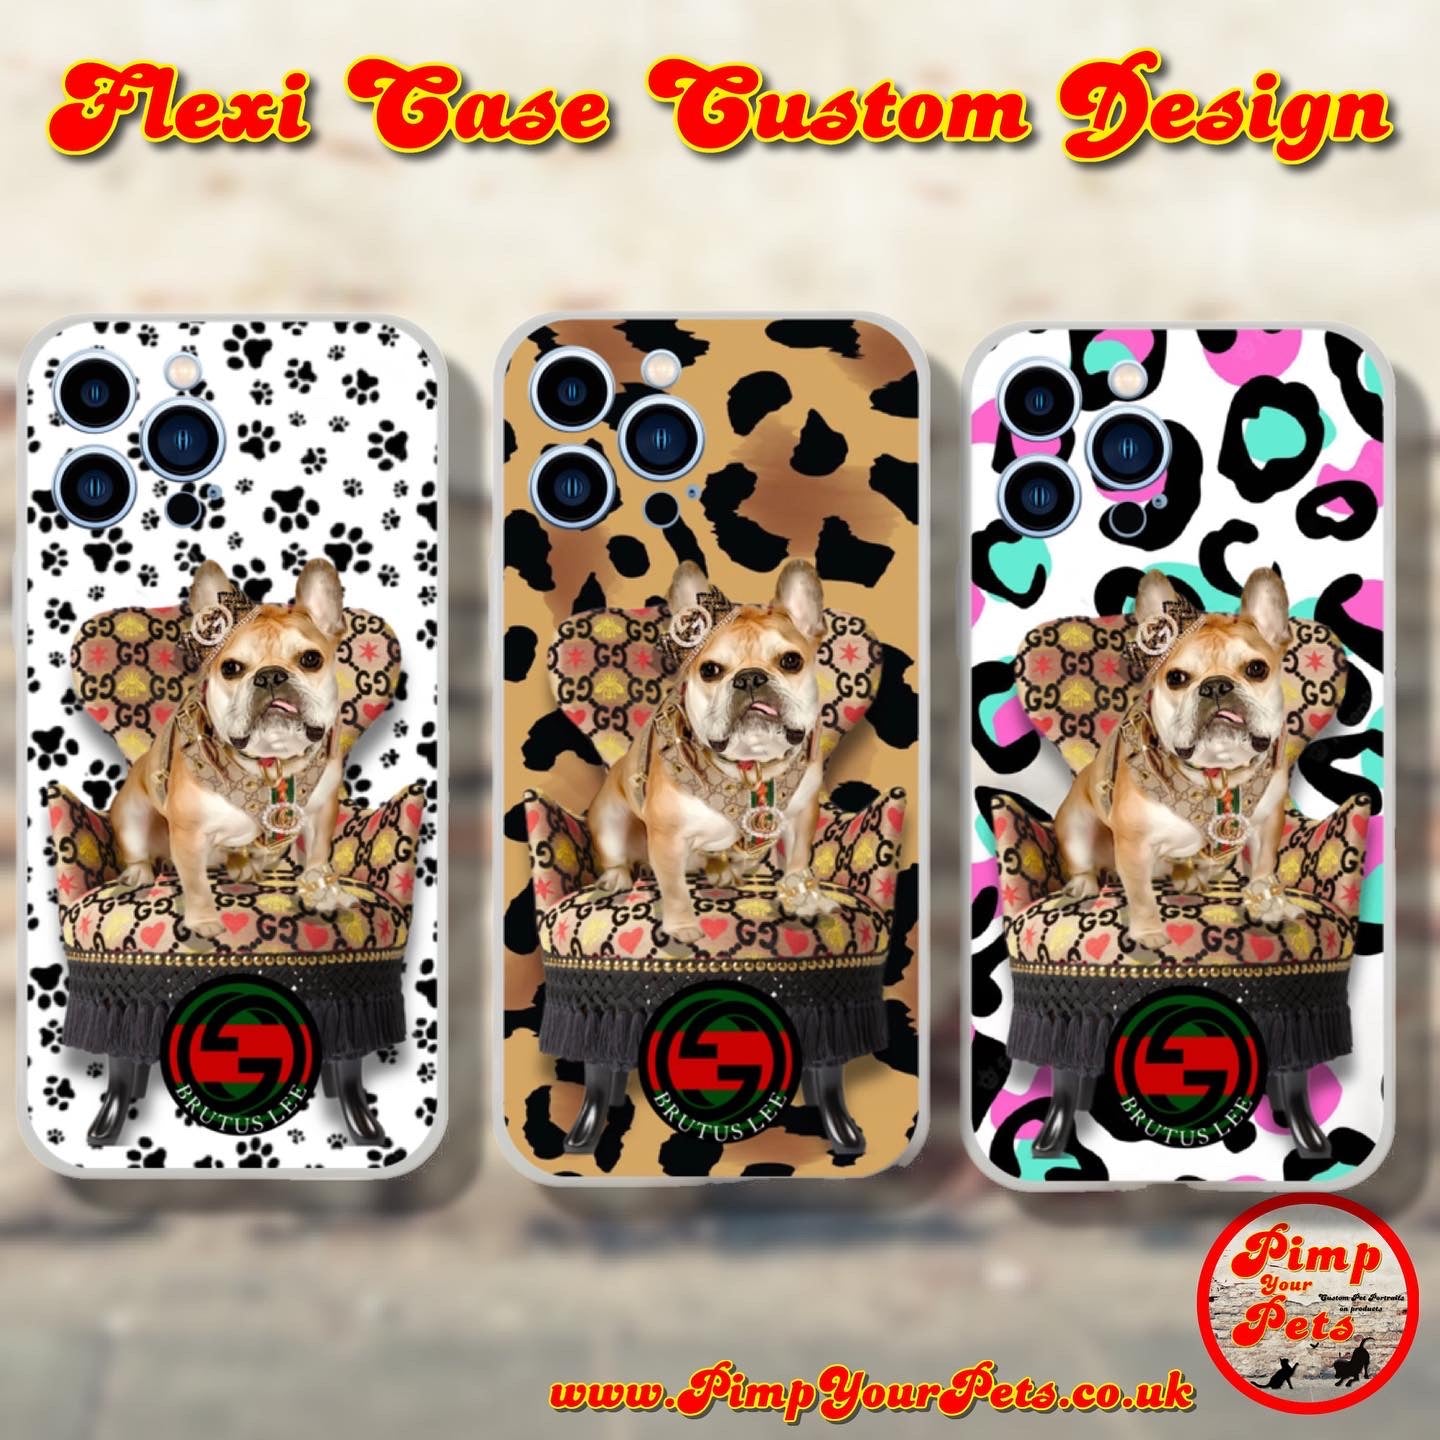 Flexi case Custom Design